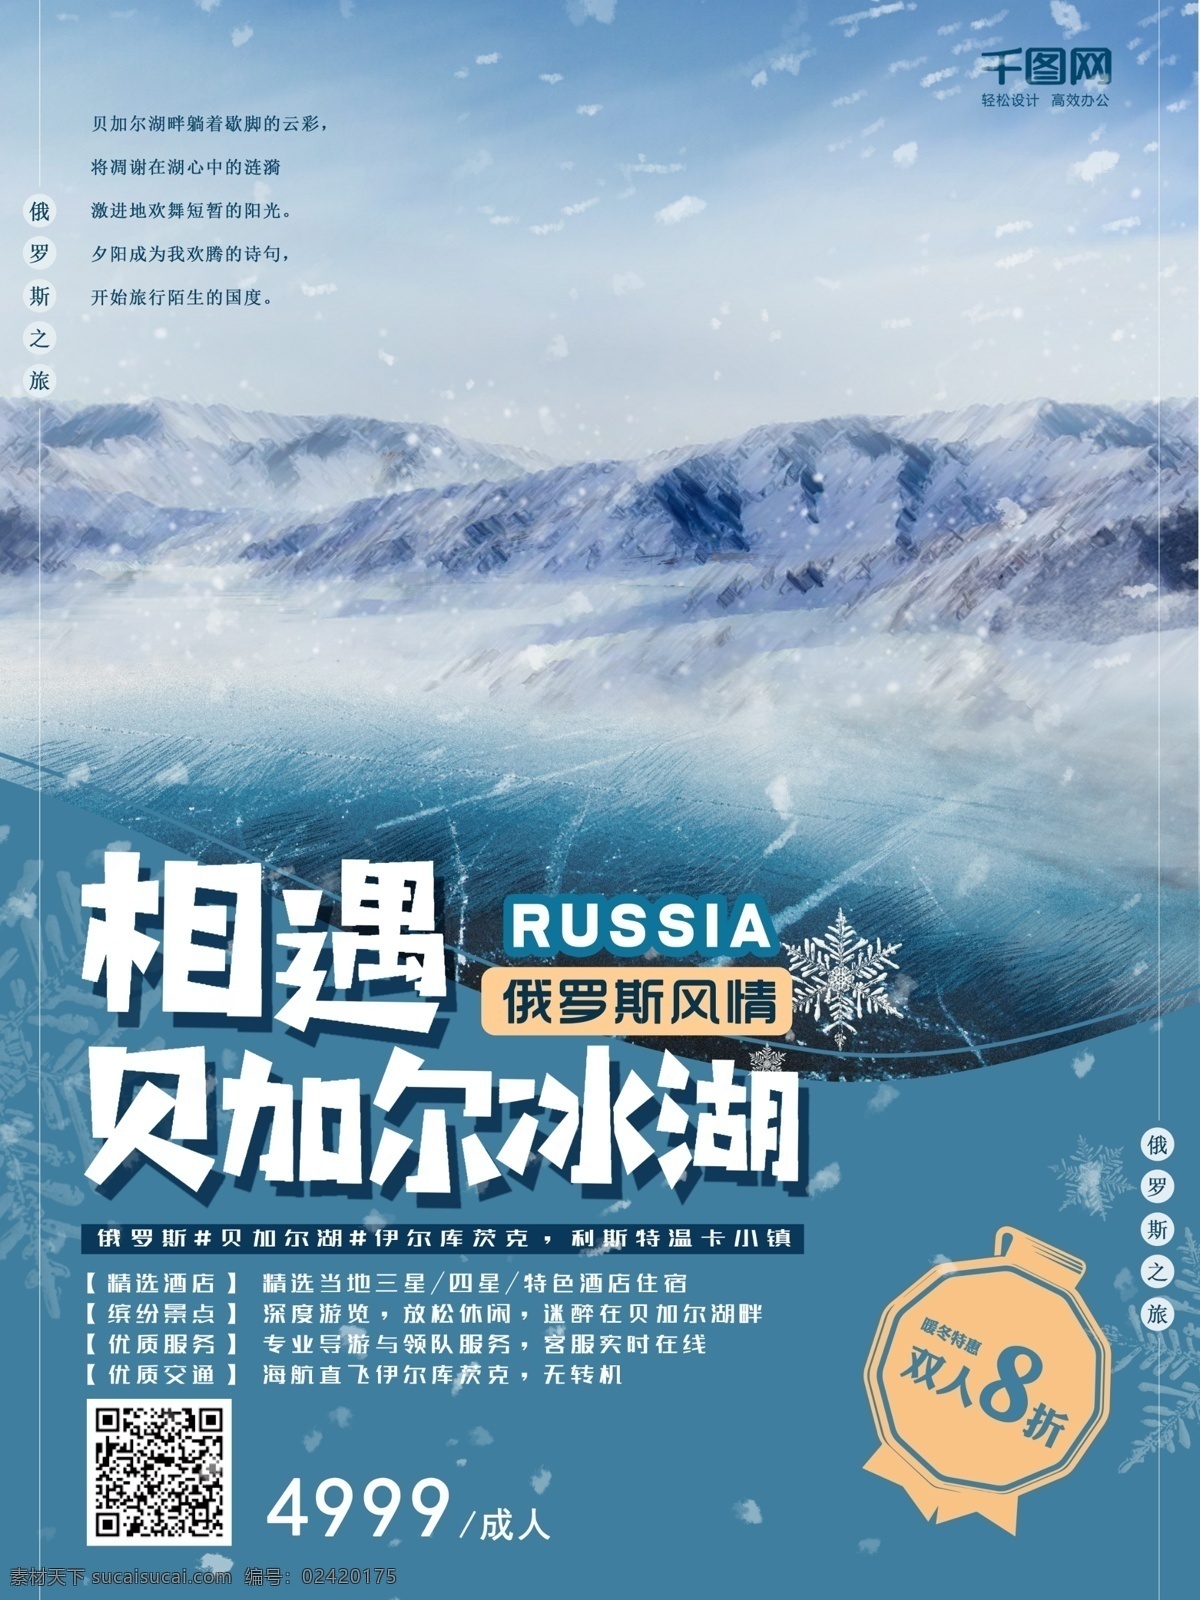 俄罗斯 旅游 海报 贝加尔湖 冬季 雪景 蓝色 旅游海报 蓝色海报 俄罗斯旅游 冬季旅游